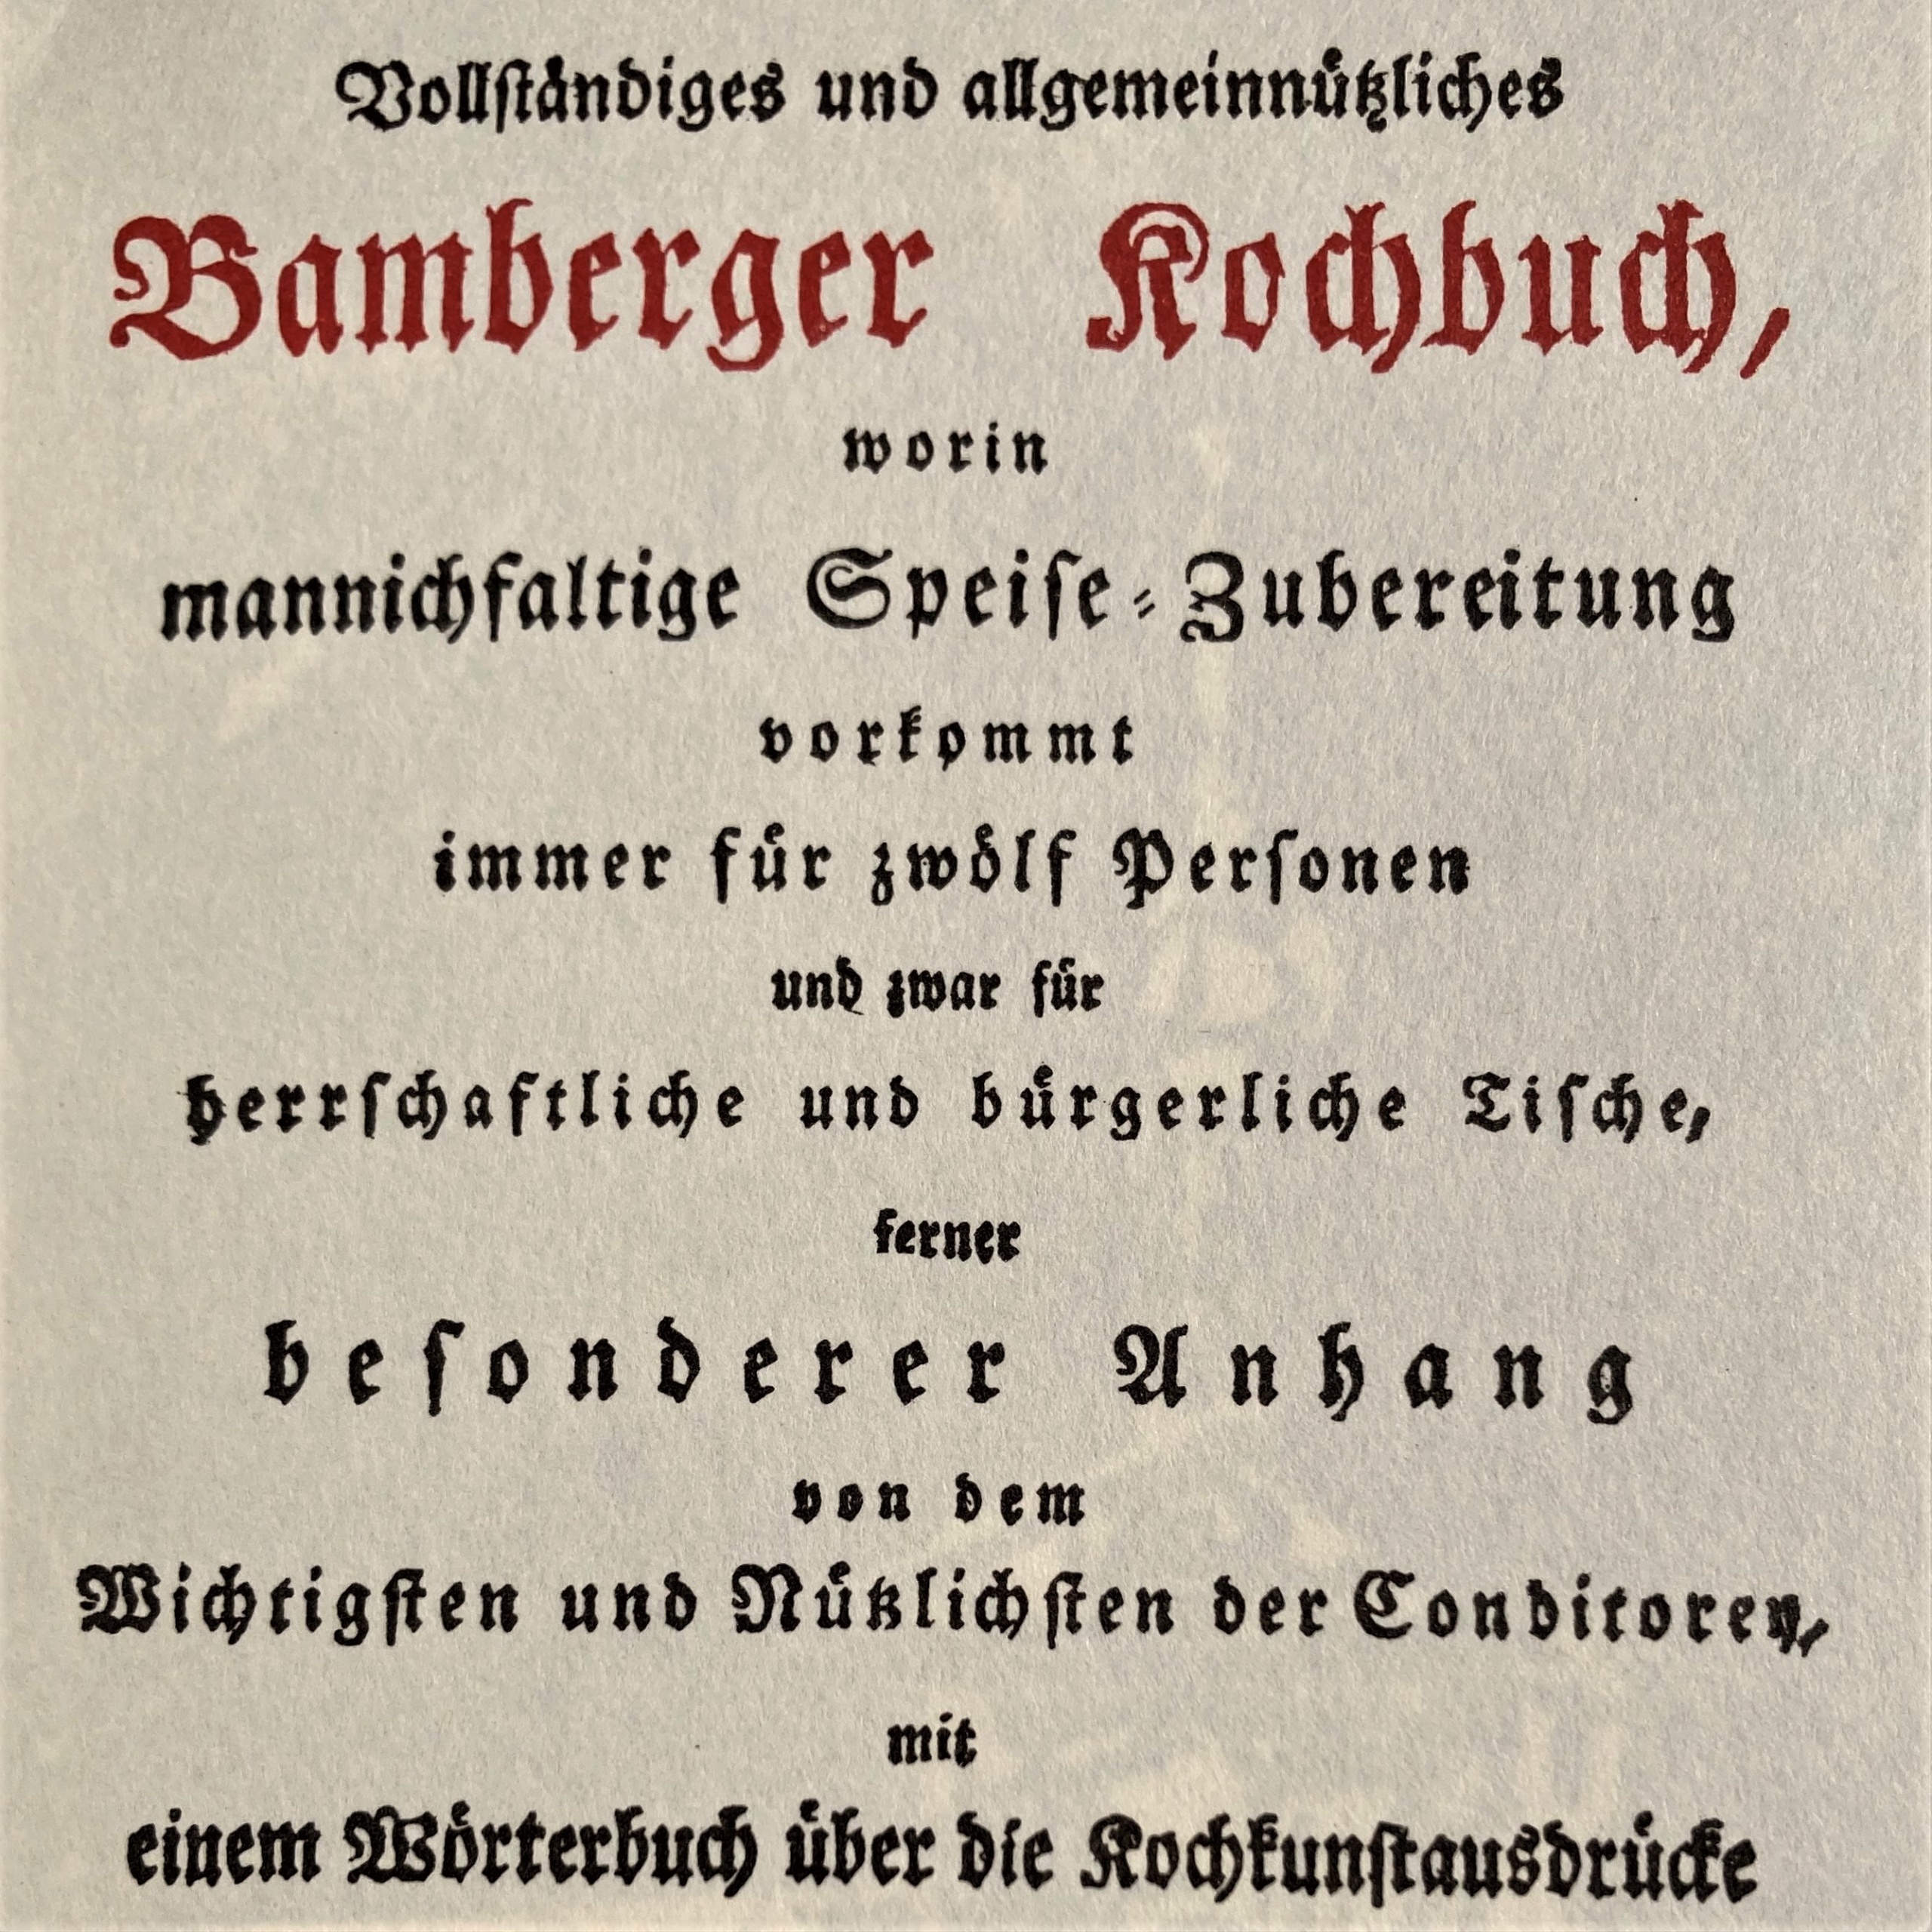 Bamberger Kochbuch